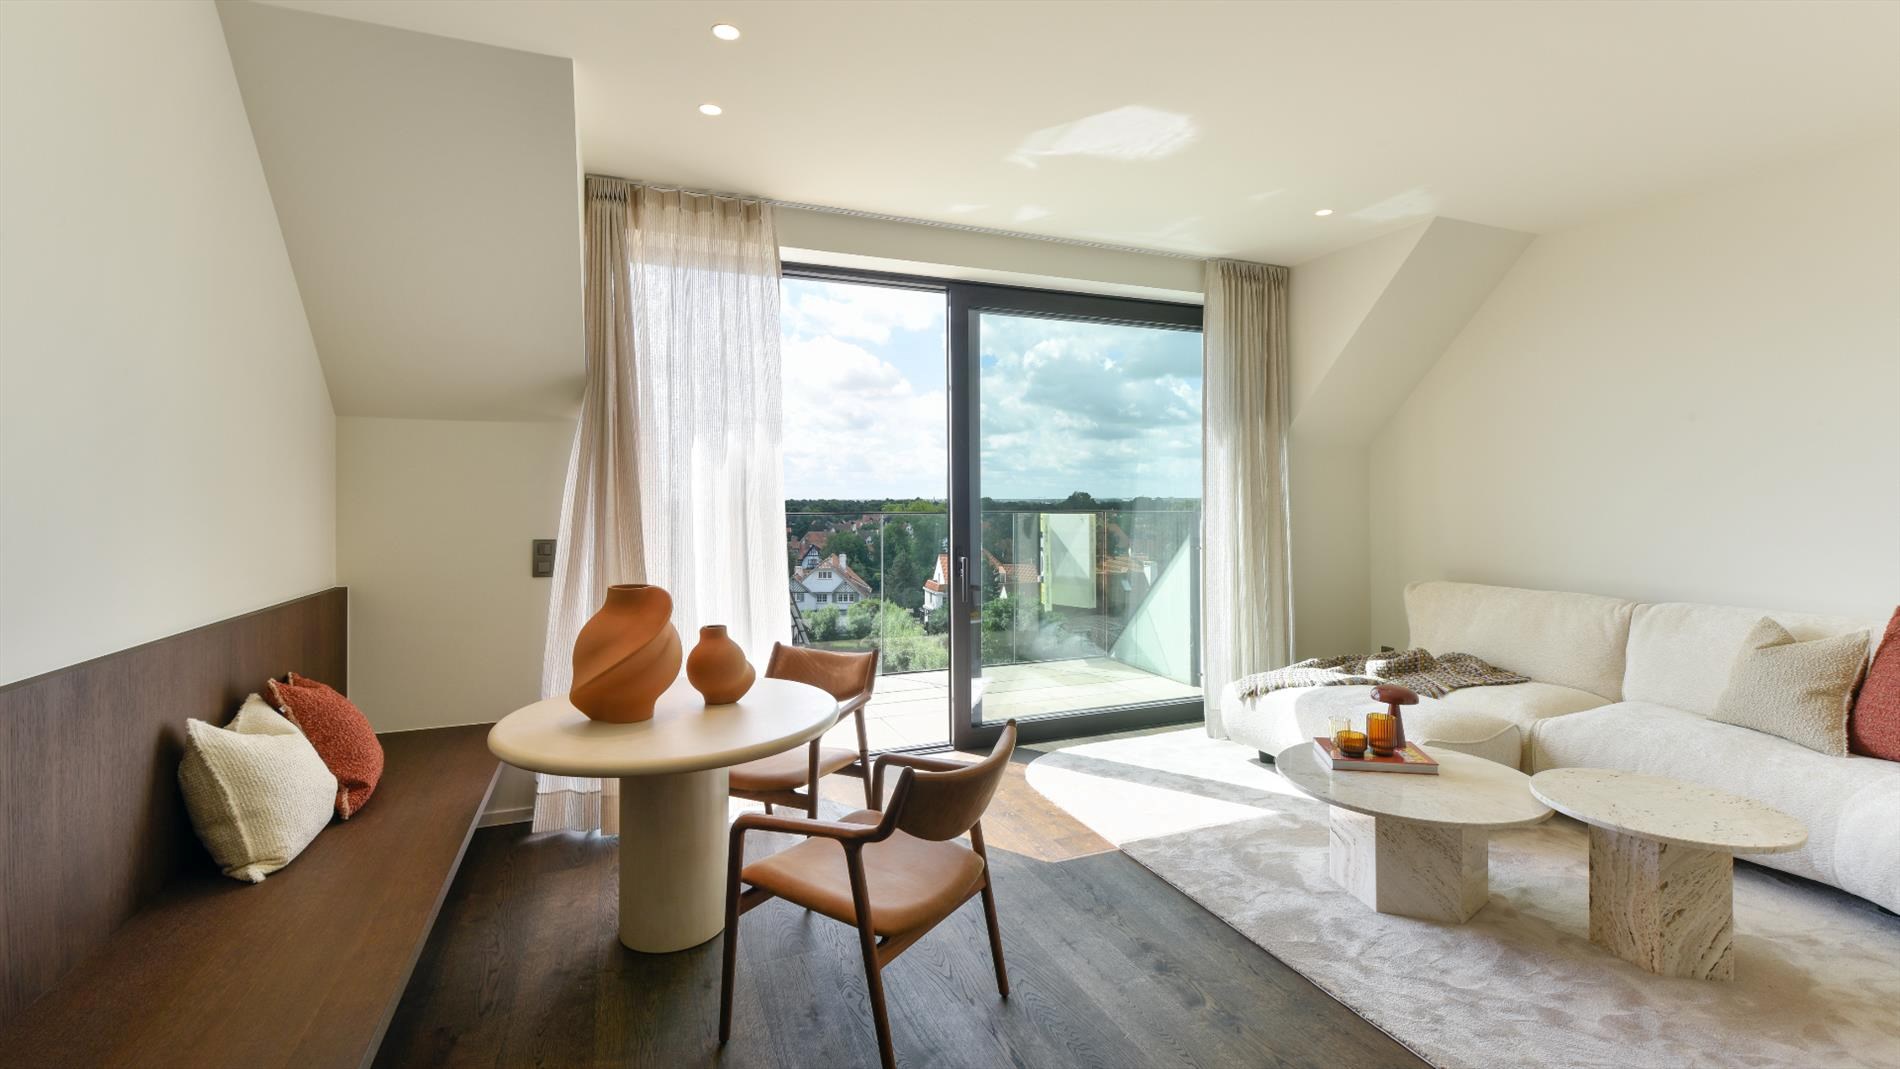 Nieuw (2021), luxueus afgewerkt duplex appartement op een fantastische ligging in hartje Zoute. 